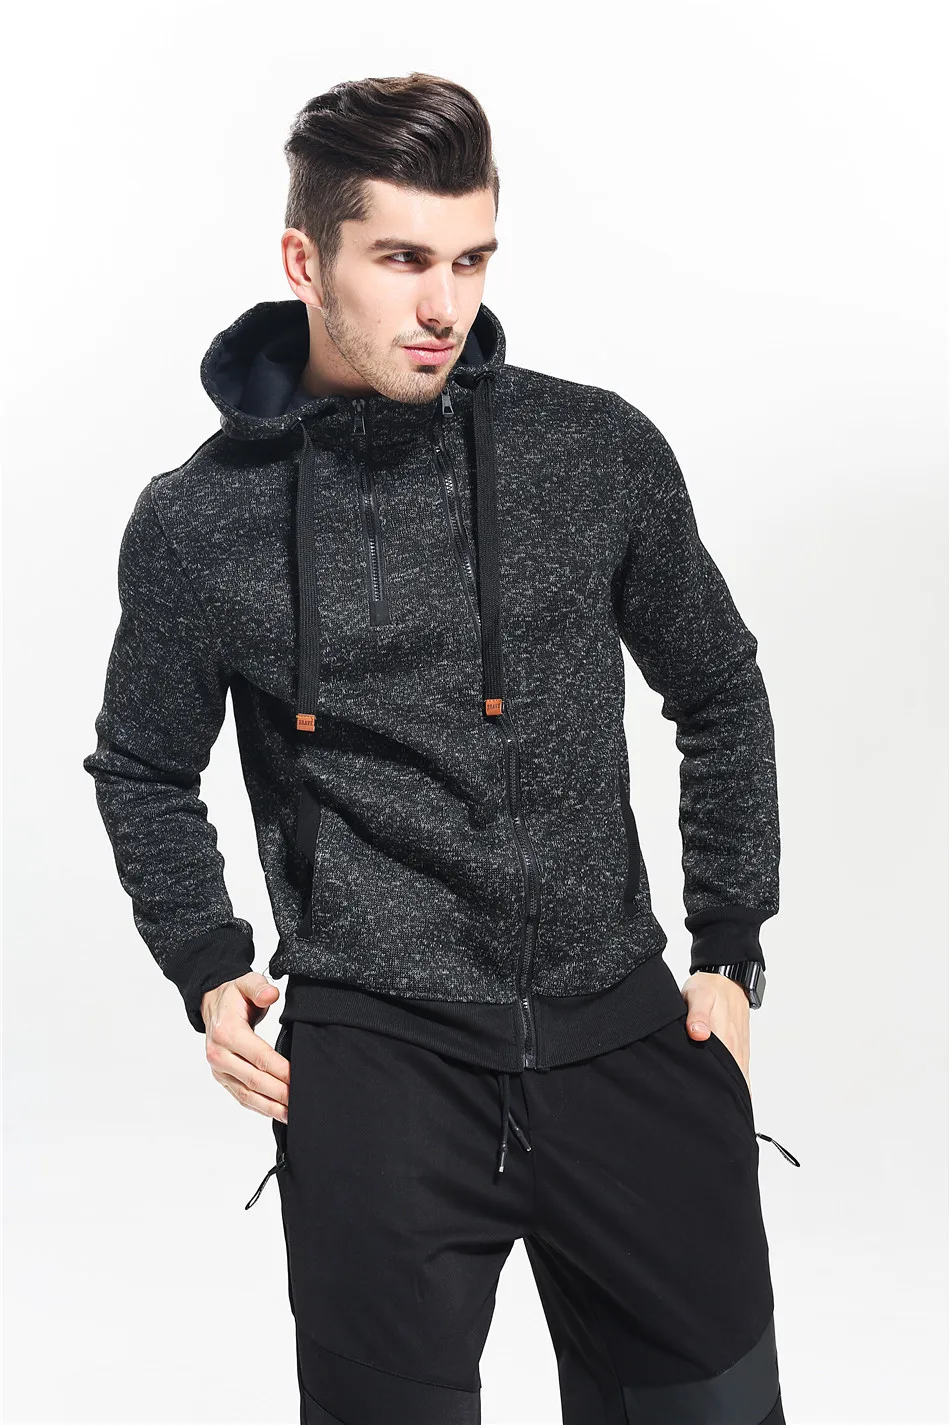 Мужские бархатные свитера с капюшоном для тренировок, куртка для бега, компрессионные колготки, фитнес-упражнения, спортивные толстовки для бега